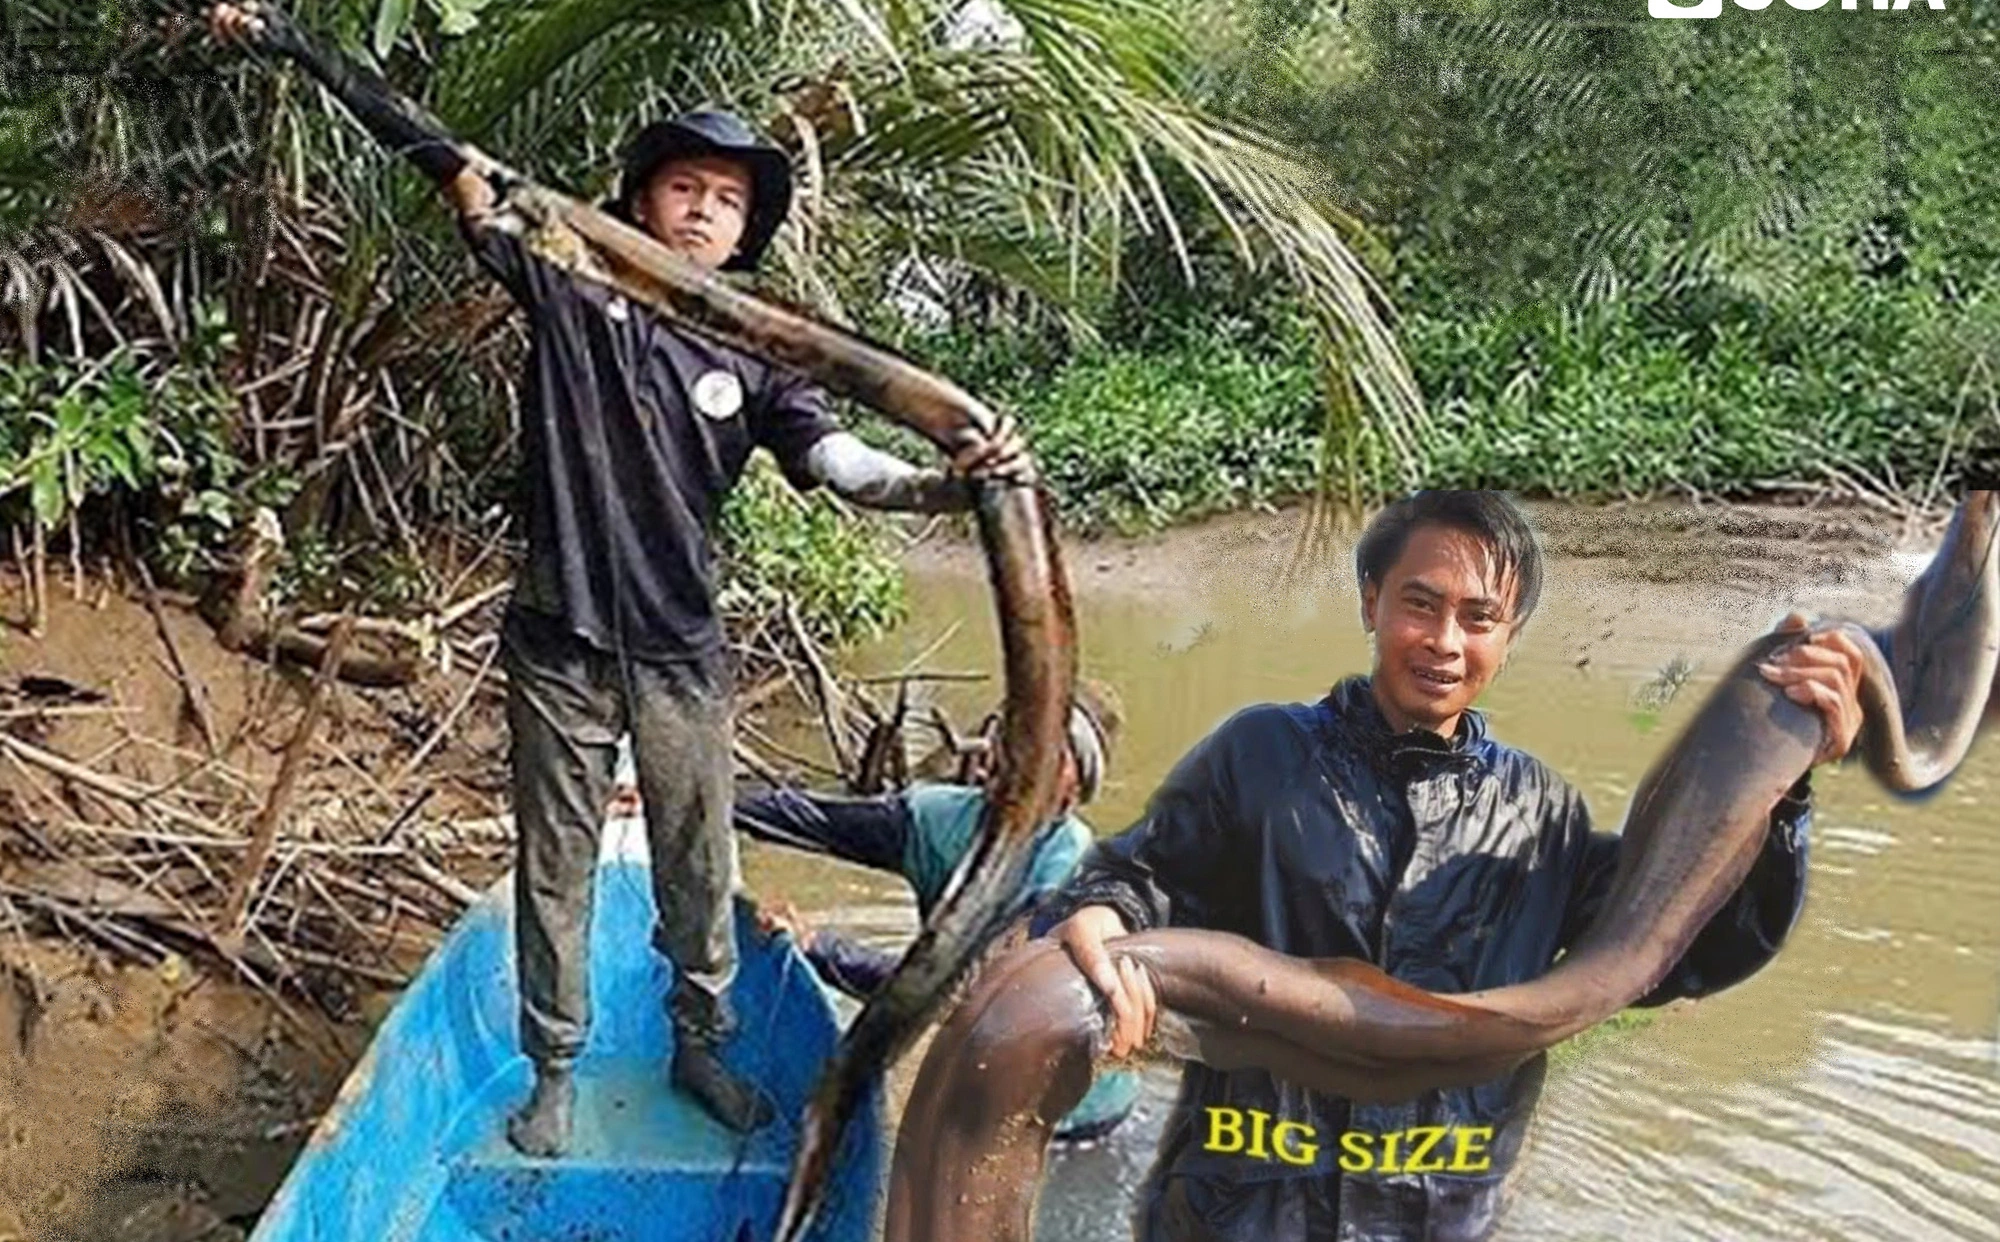 Dùng hết sức kéo sợi dây thừng lên, người đàn ông bắt được 'quái vật' lươn khủng nặng 2,3 kg